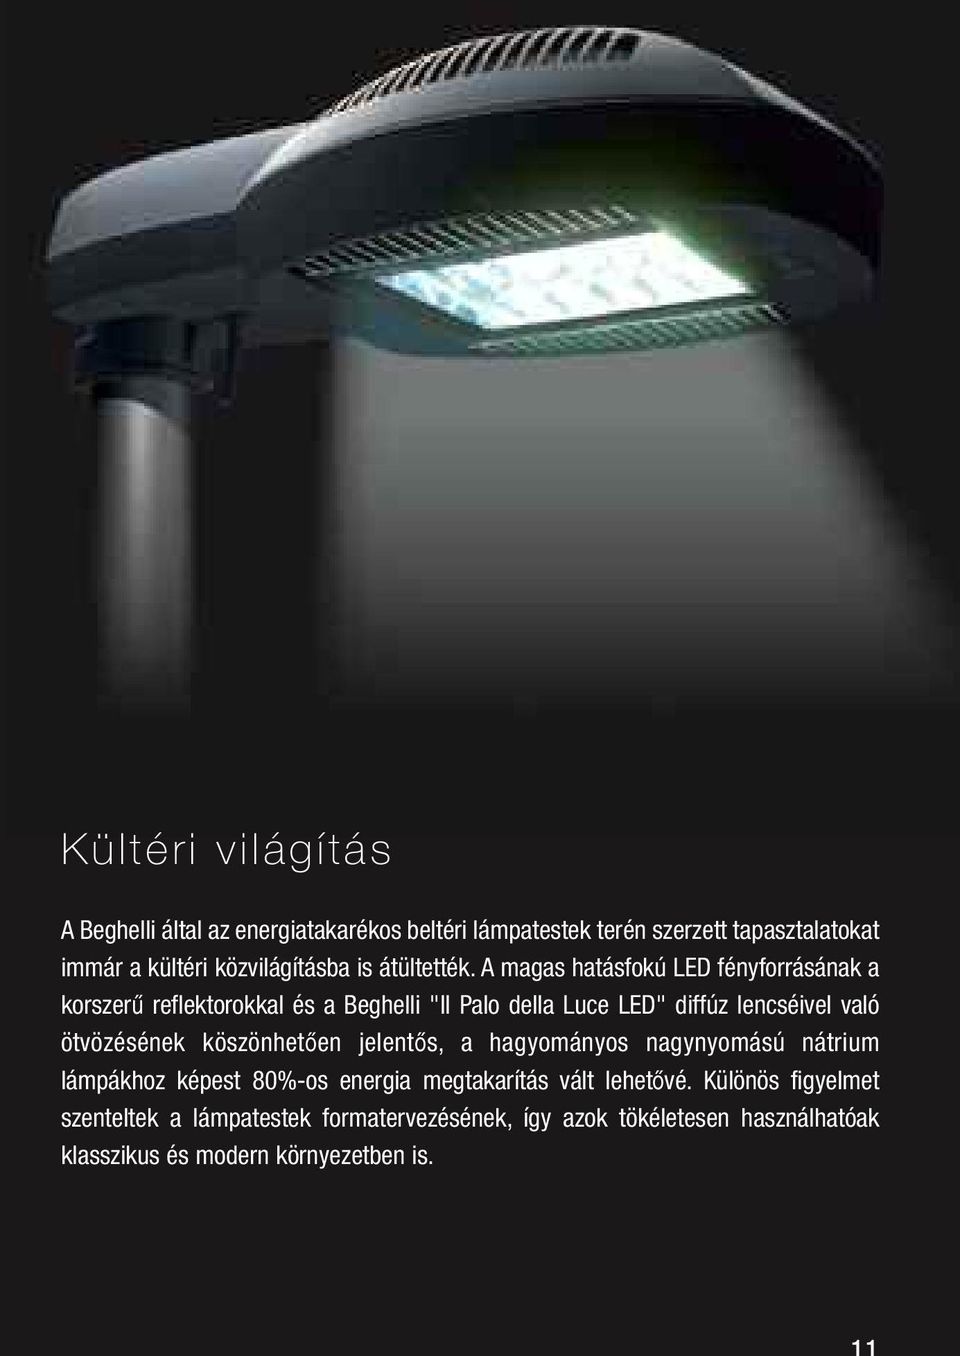 A magas hatásfokú LED fényforrásának a korszerű reflektorokkal és a Beghelli "Il Palo della Luce LED" diffúz lencséivel való